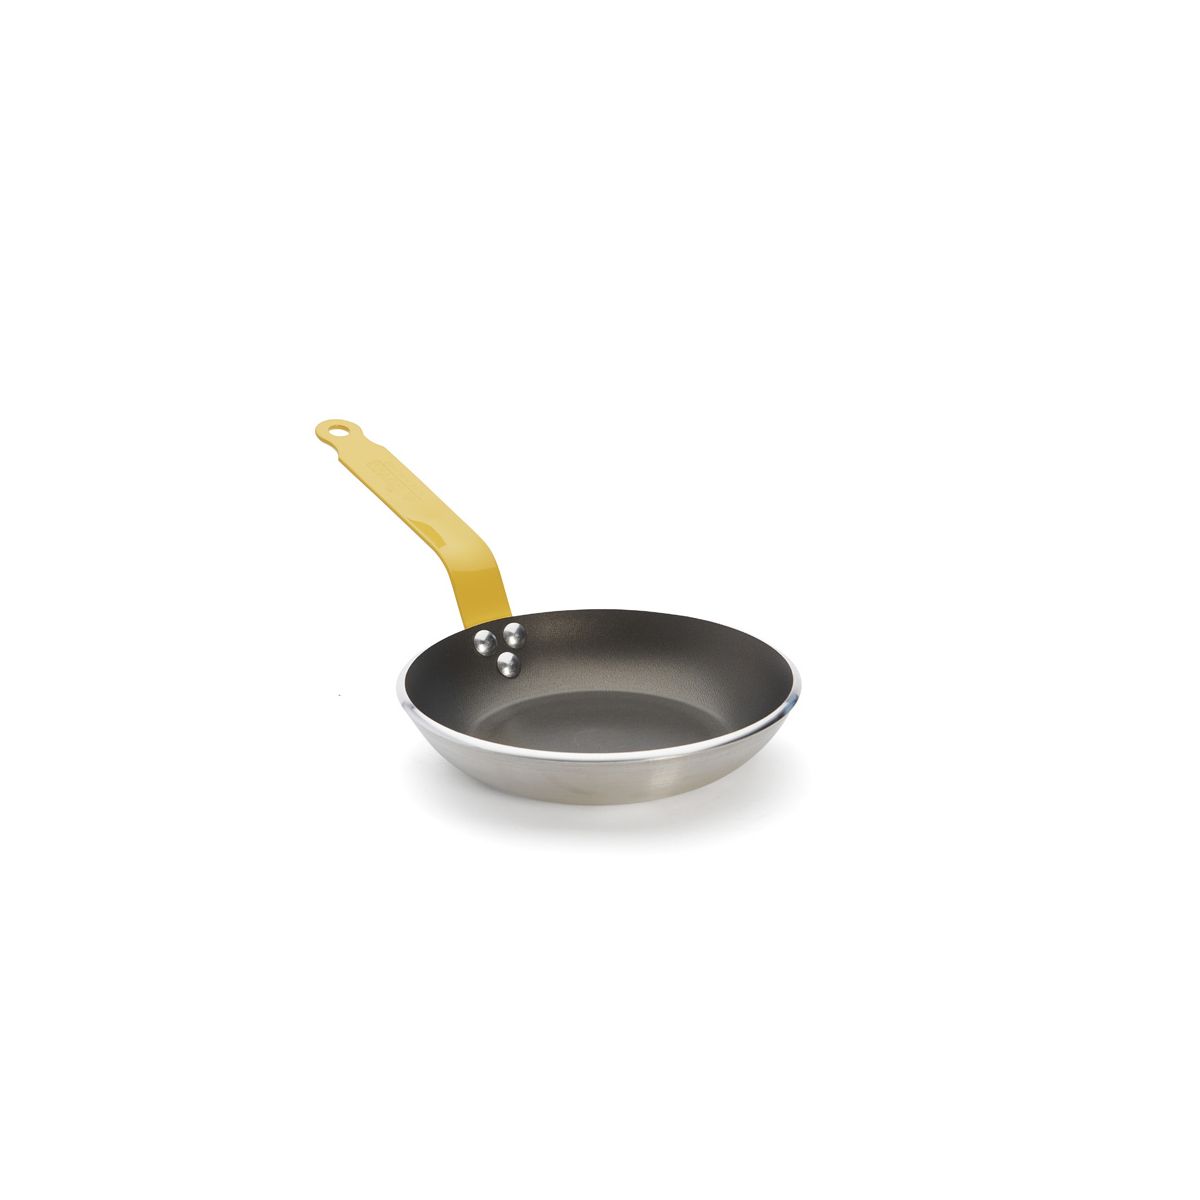 de Buyer Choc Nonstick Frying Pan, Yellow Handle, 11